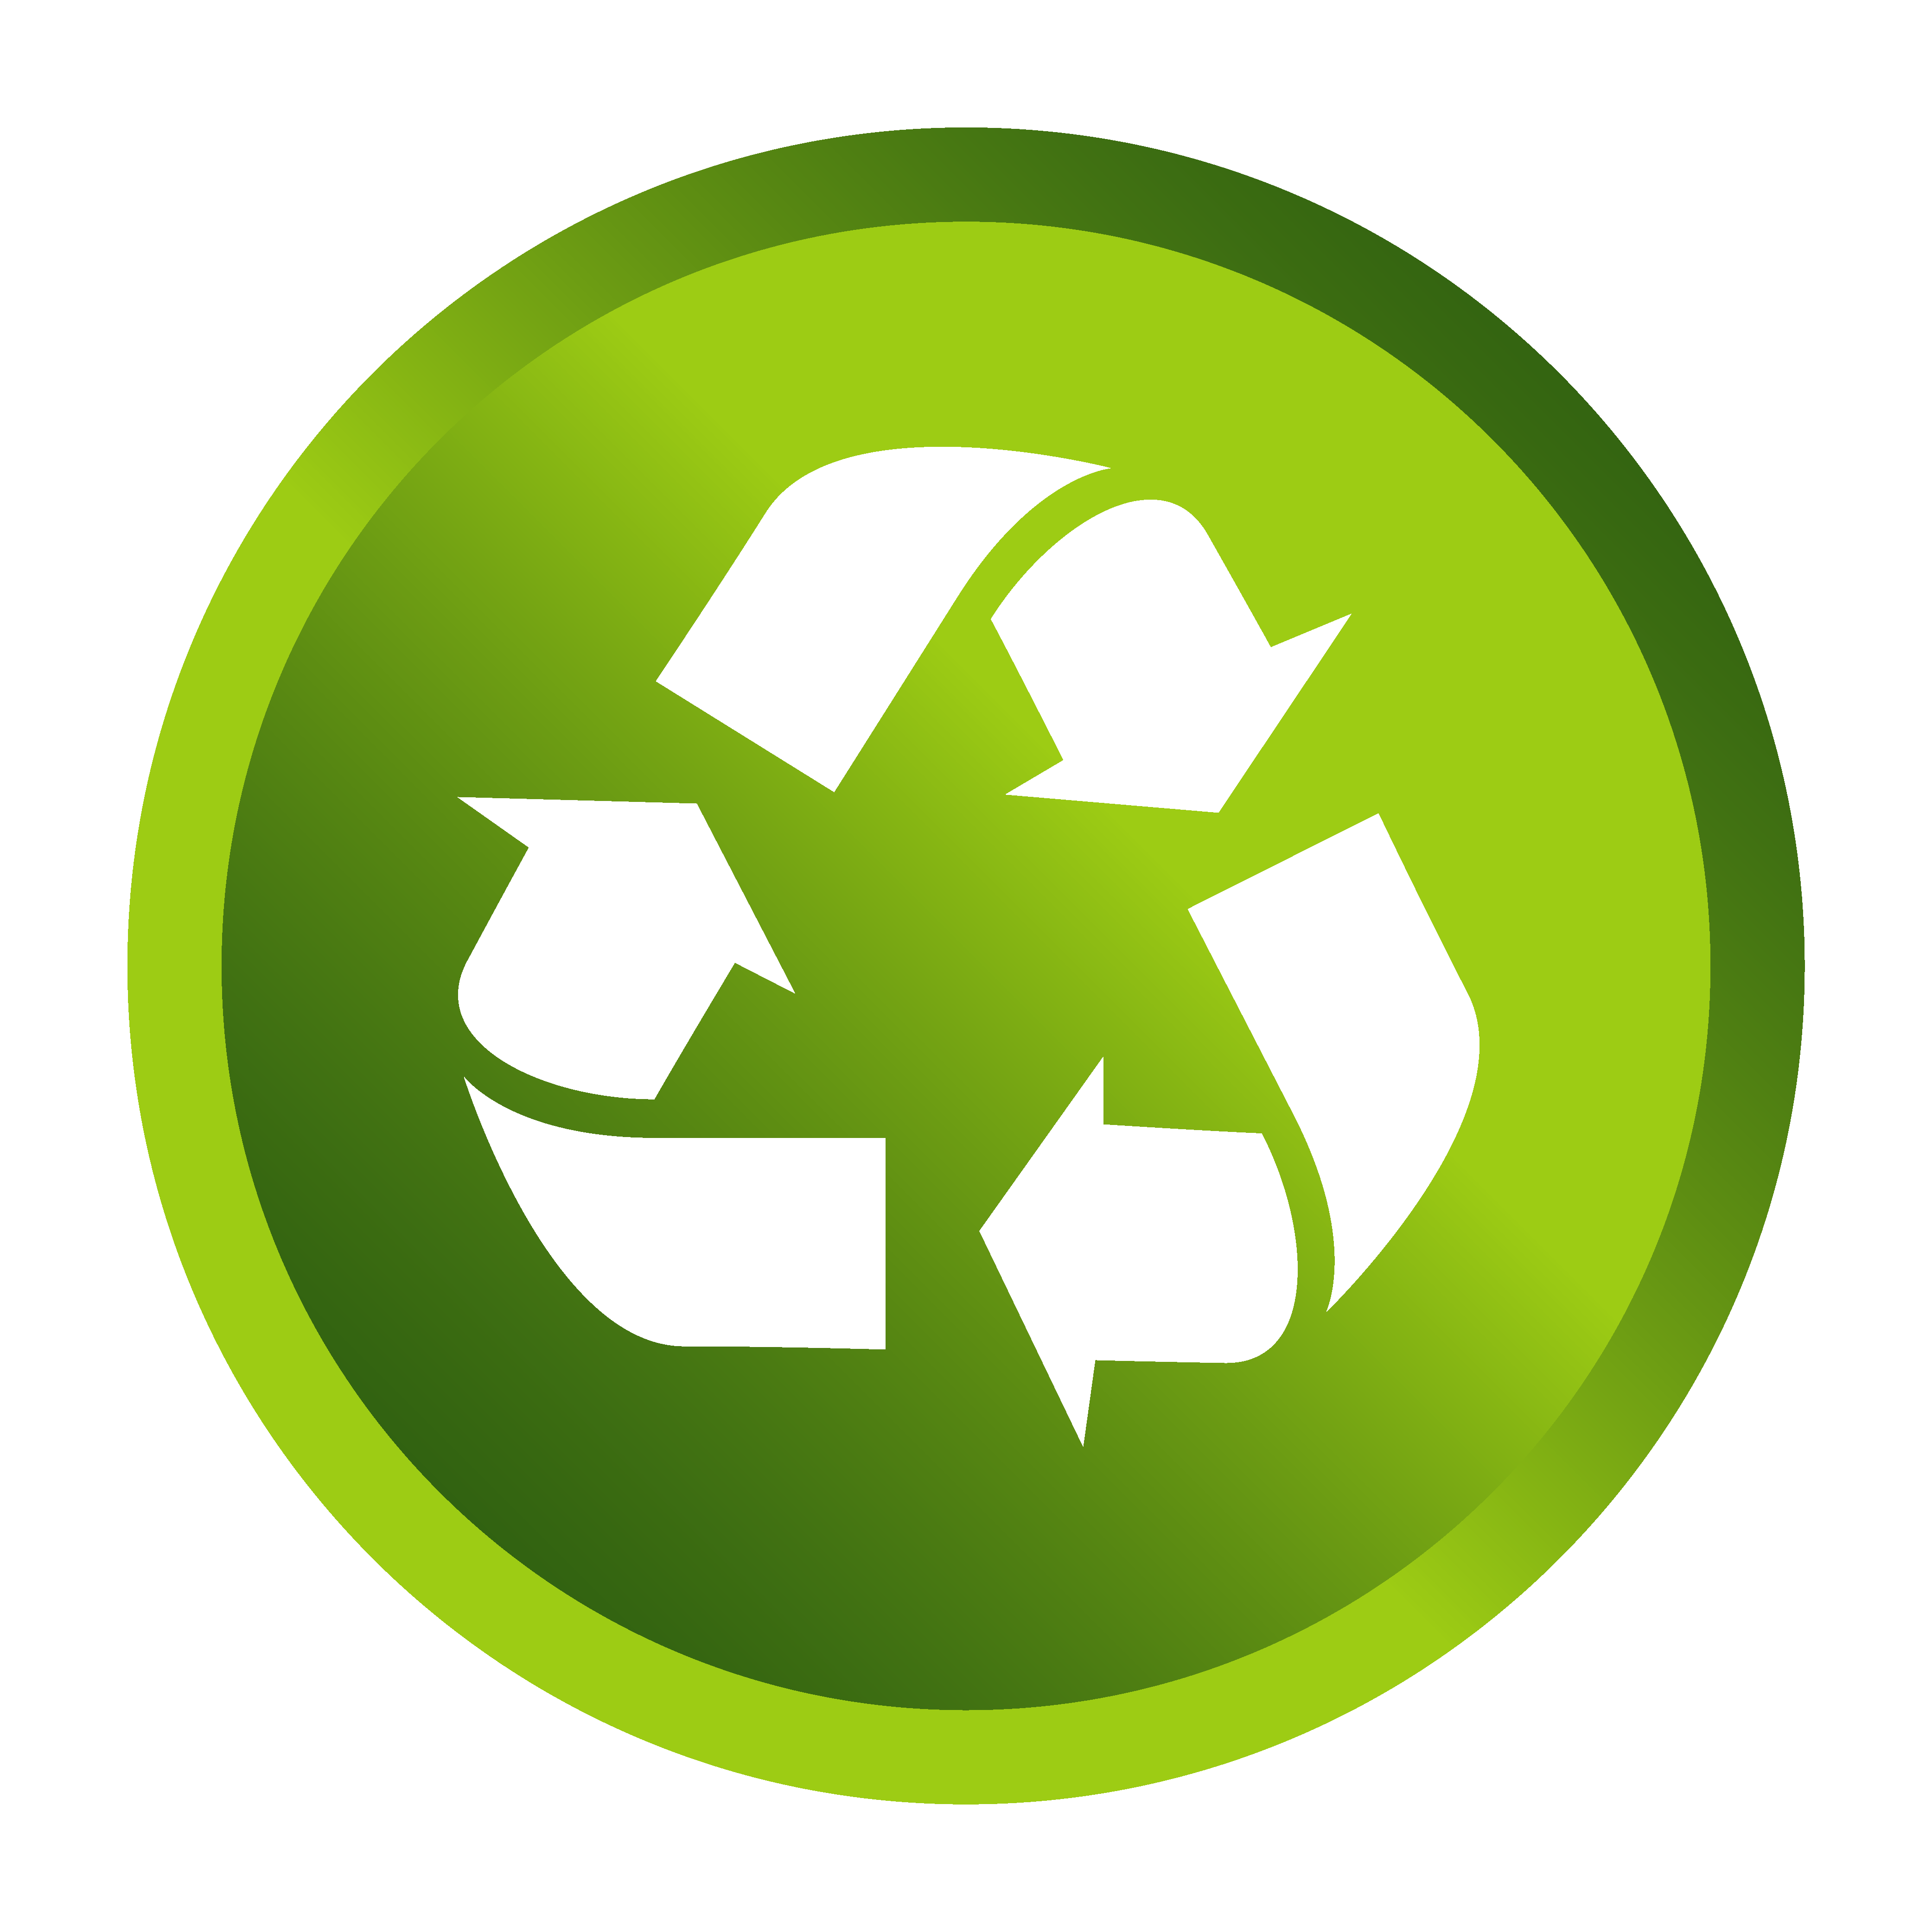 可回收垃圾图标图片-绿色环保可回收垃圾图标素材下载_懒人图库